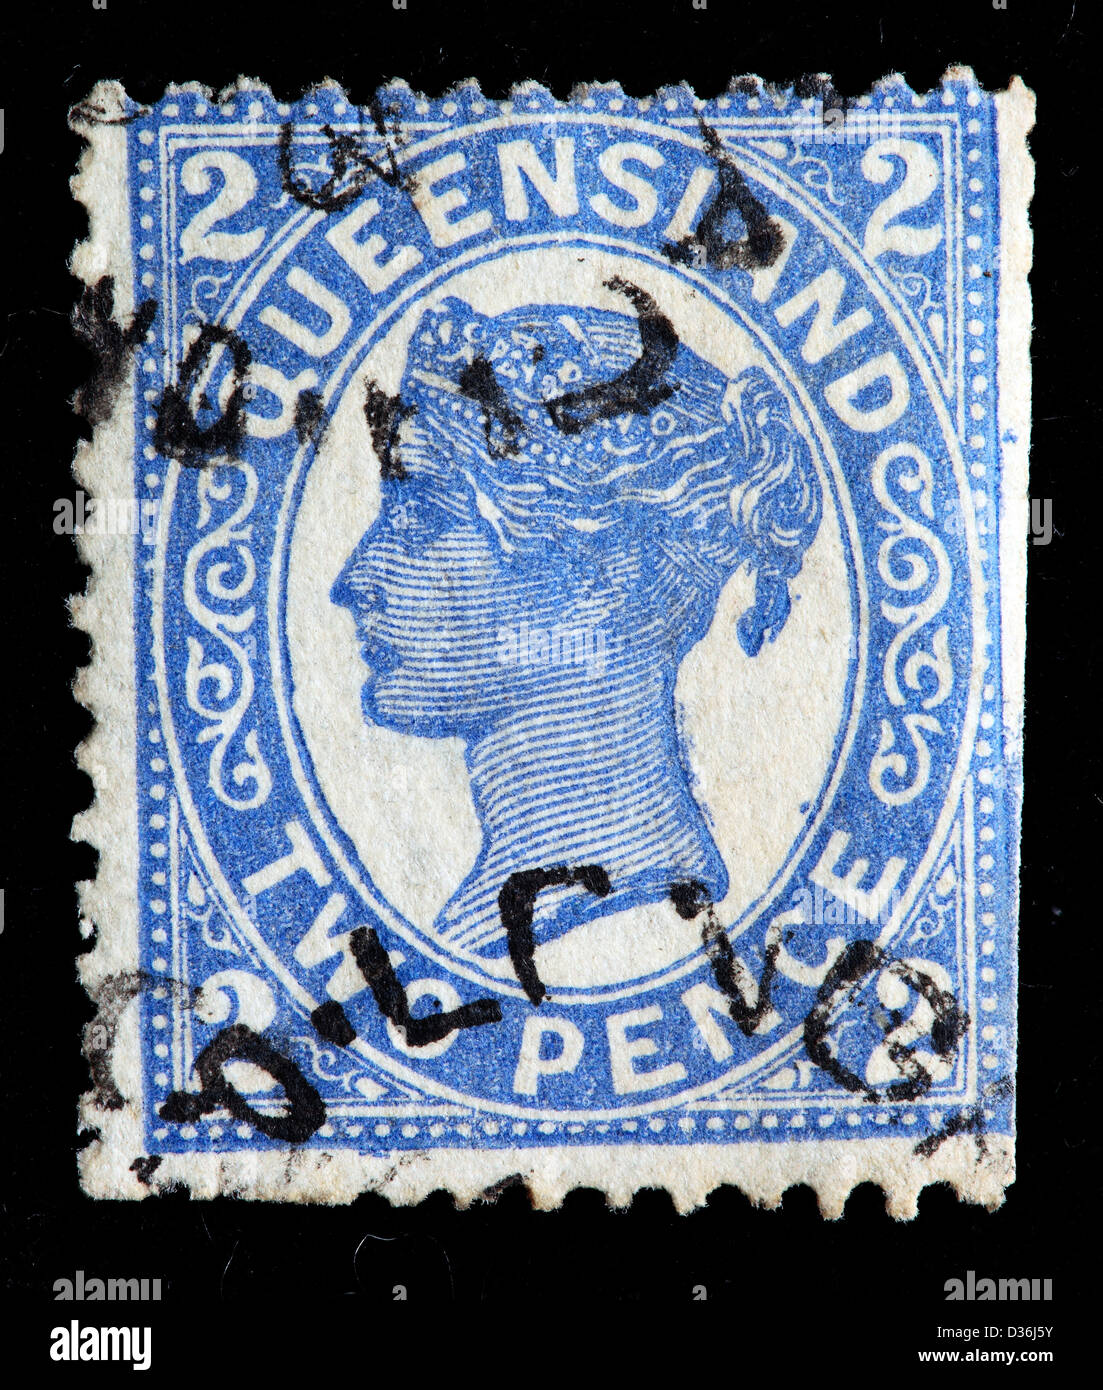 Königin Victoria, Briefmarke, Queensland, Australien, 1887 Stockfoto